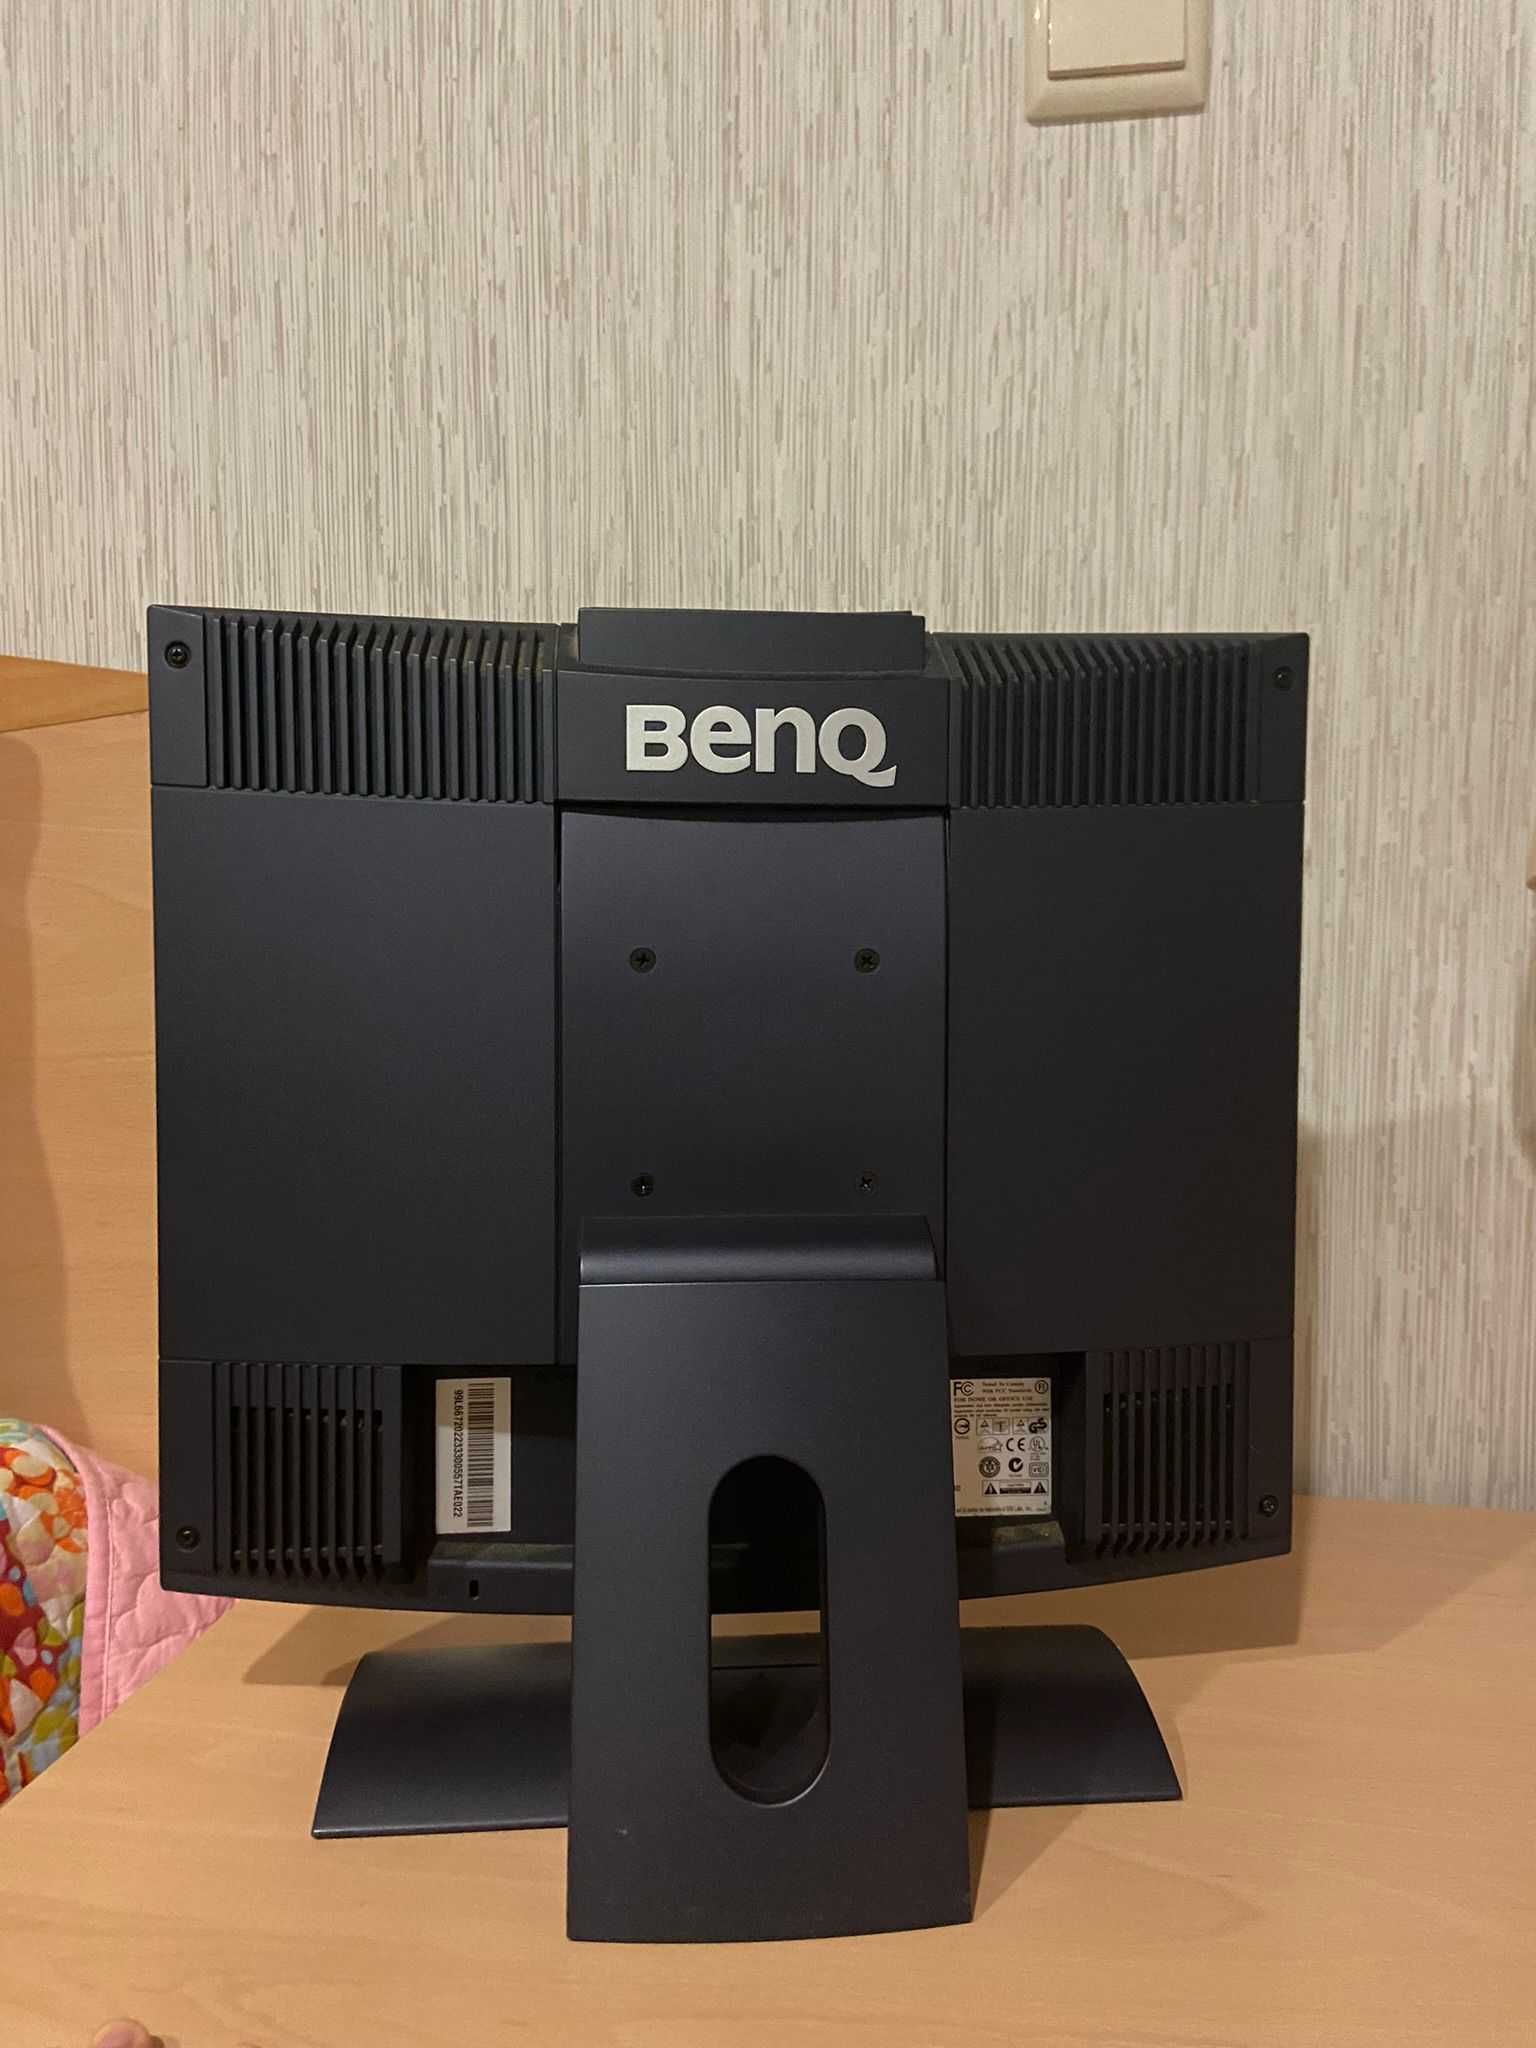 Monitor da marca BENQ